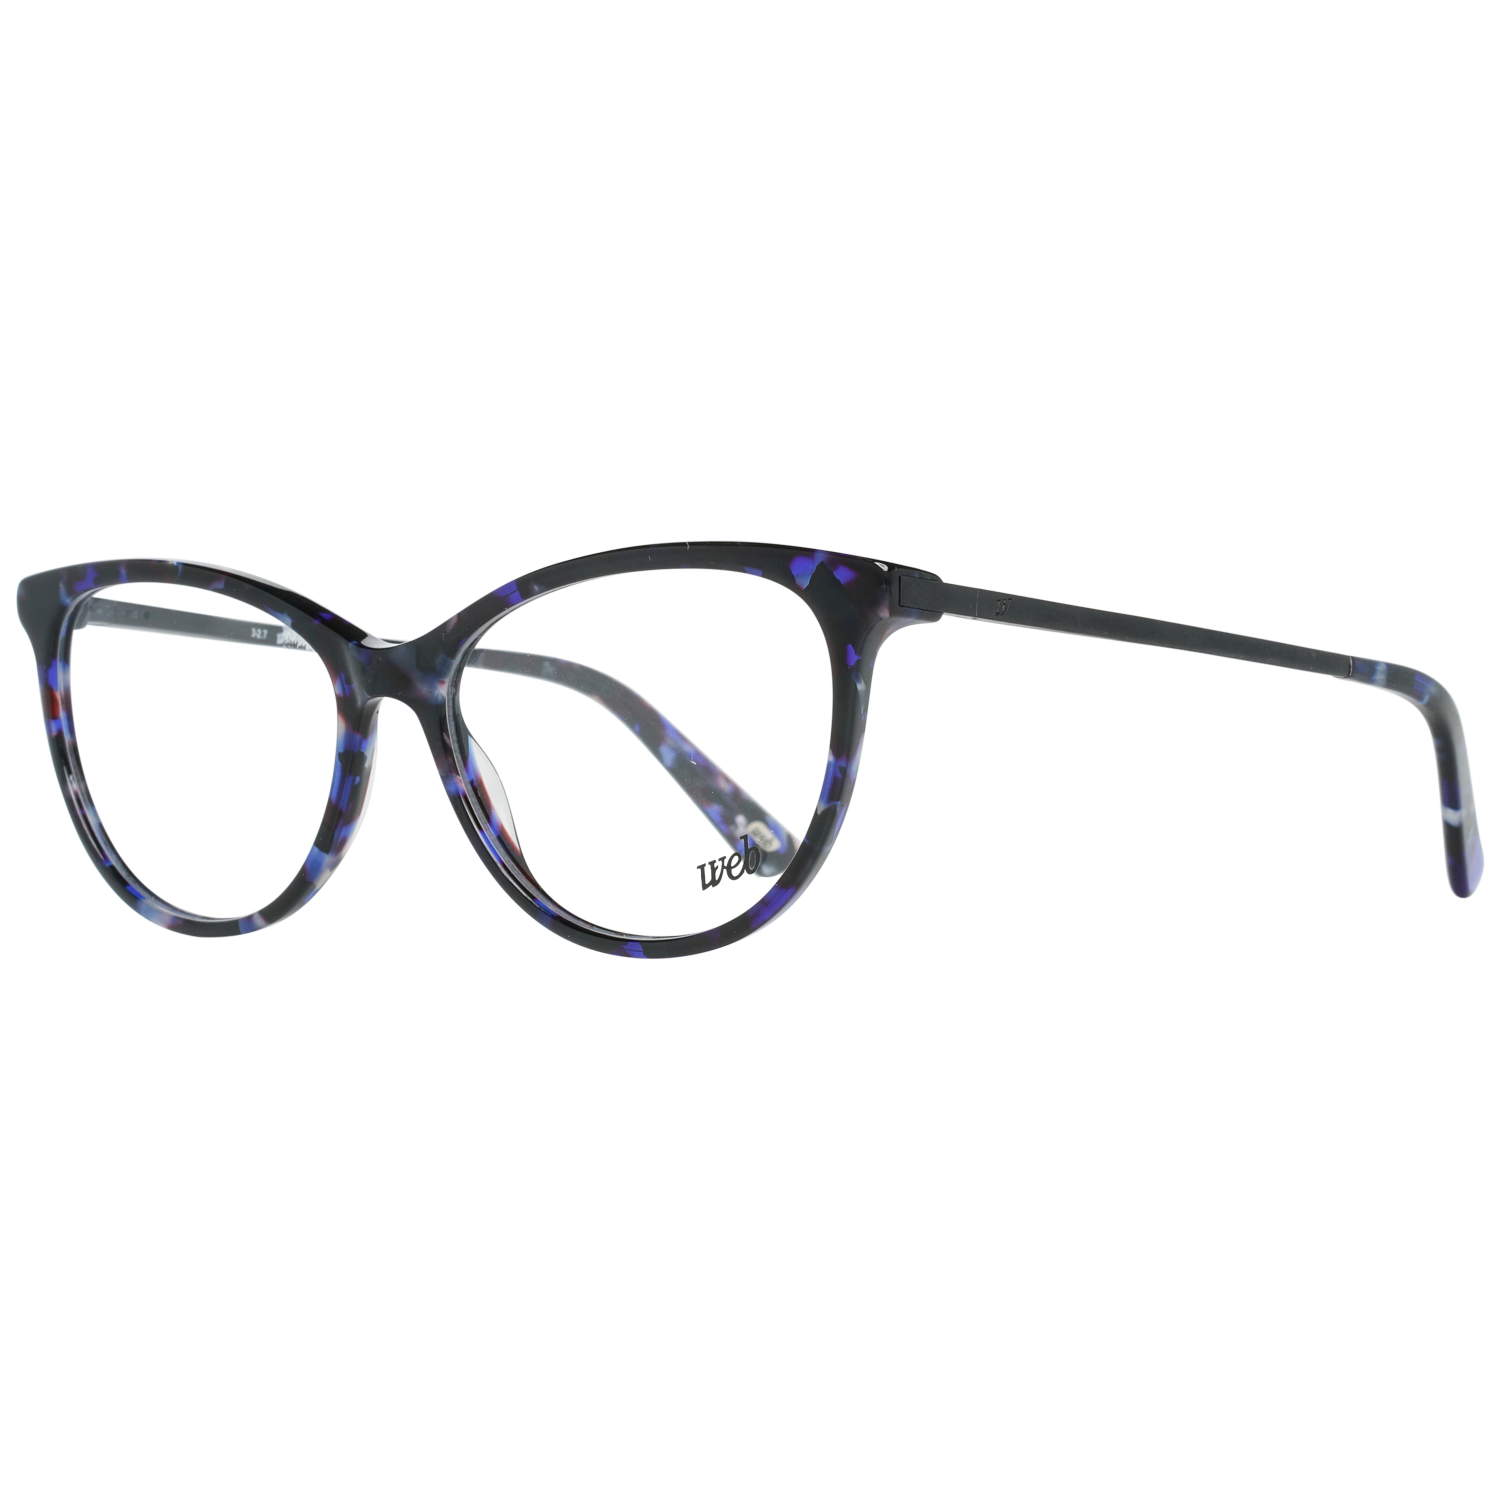 Web Frames Web Optical Frame WE5239 090 54 Eyeglasses Eyewear UK USA Australia 